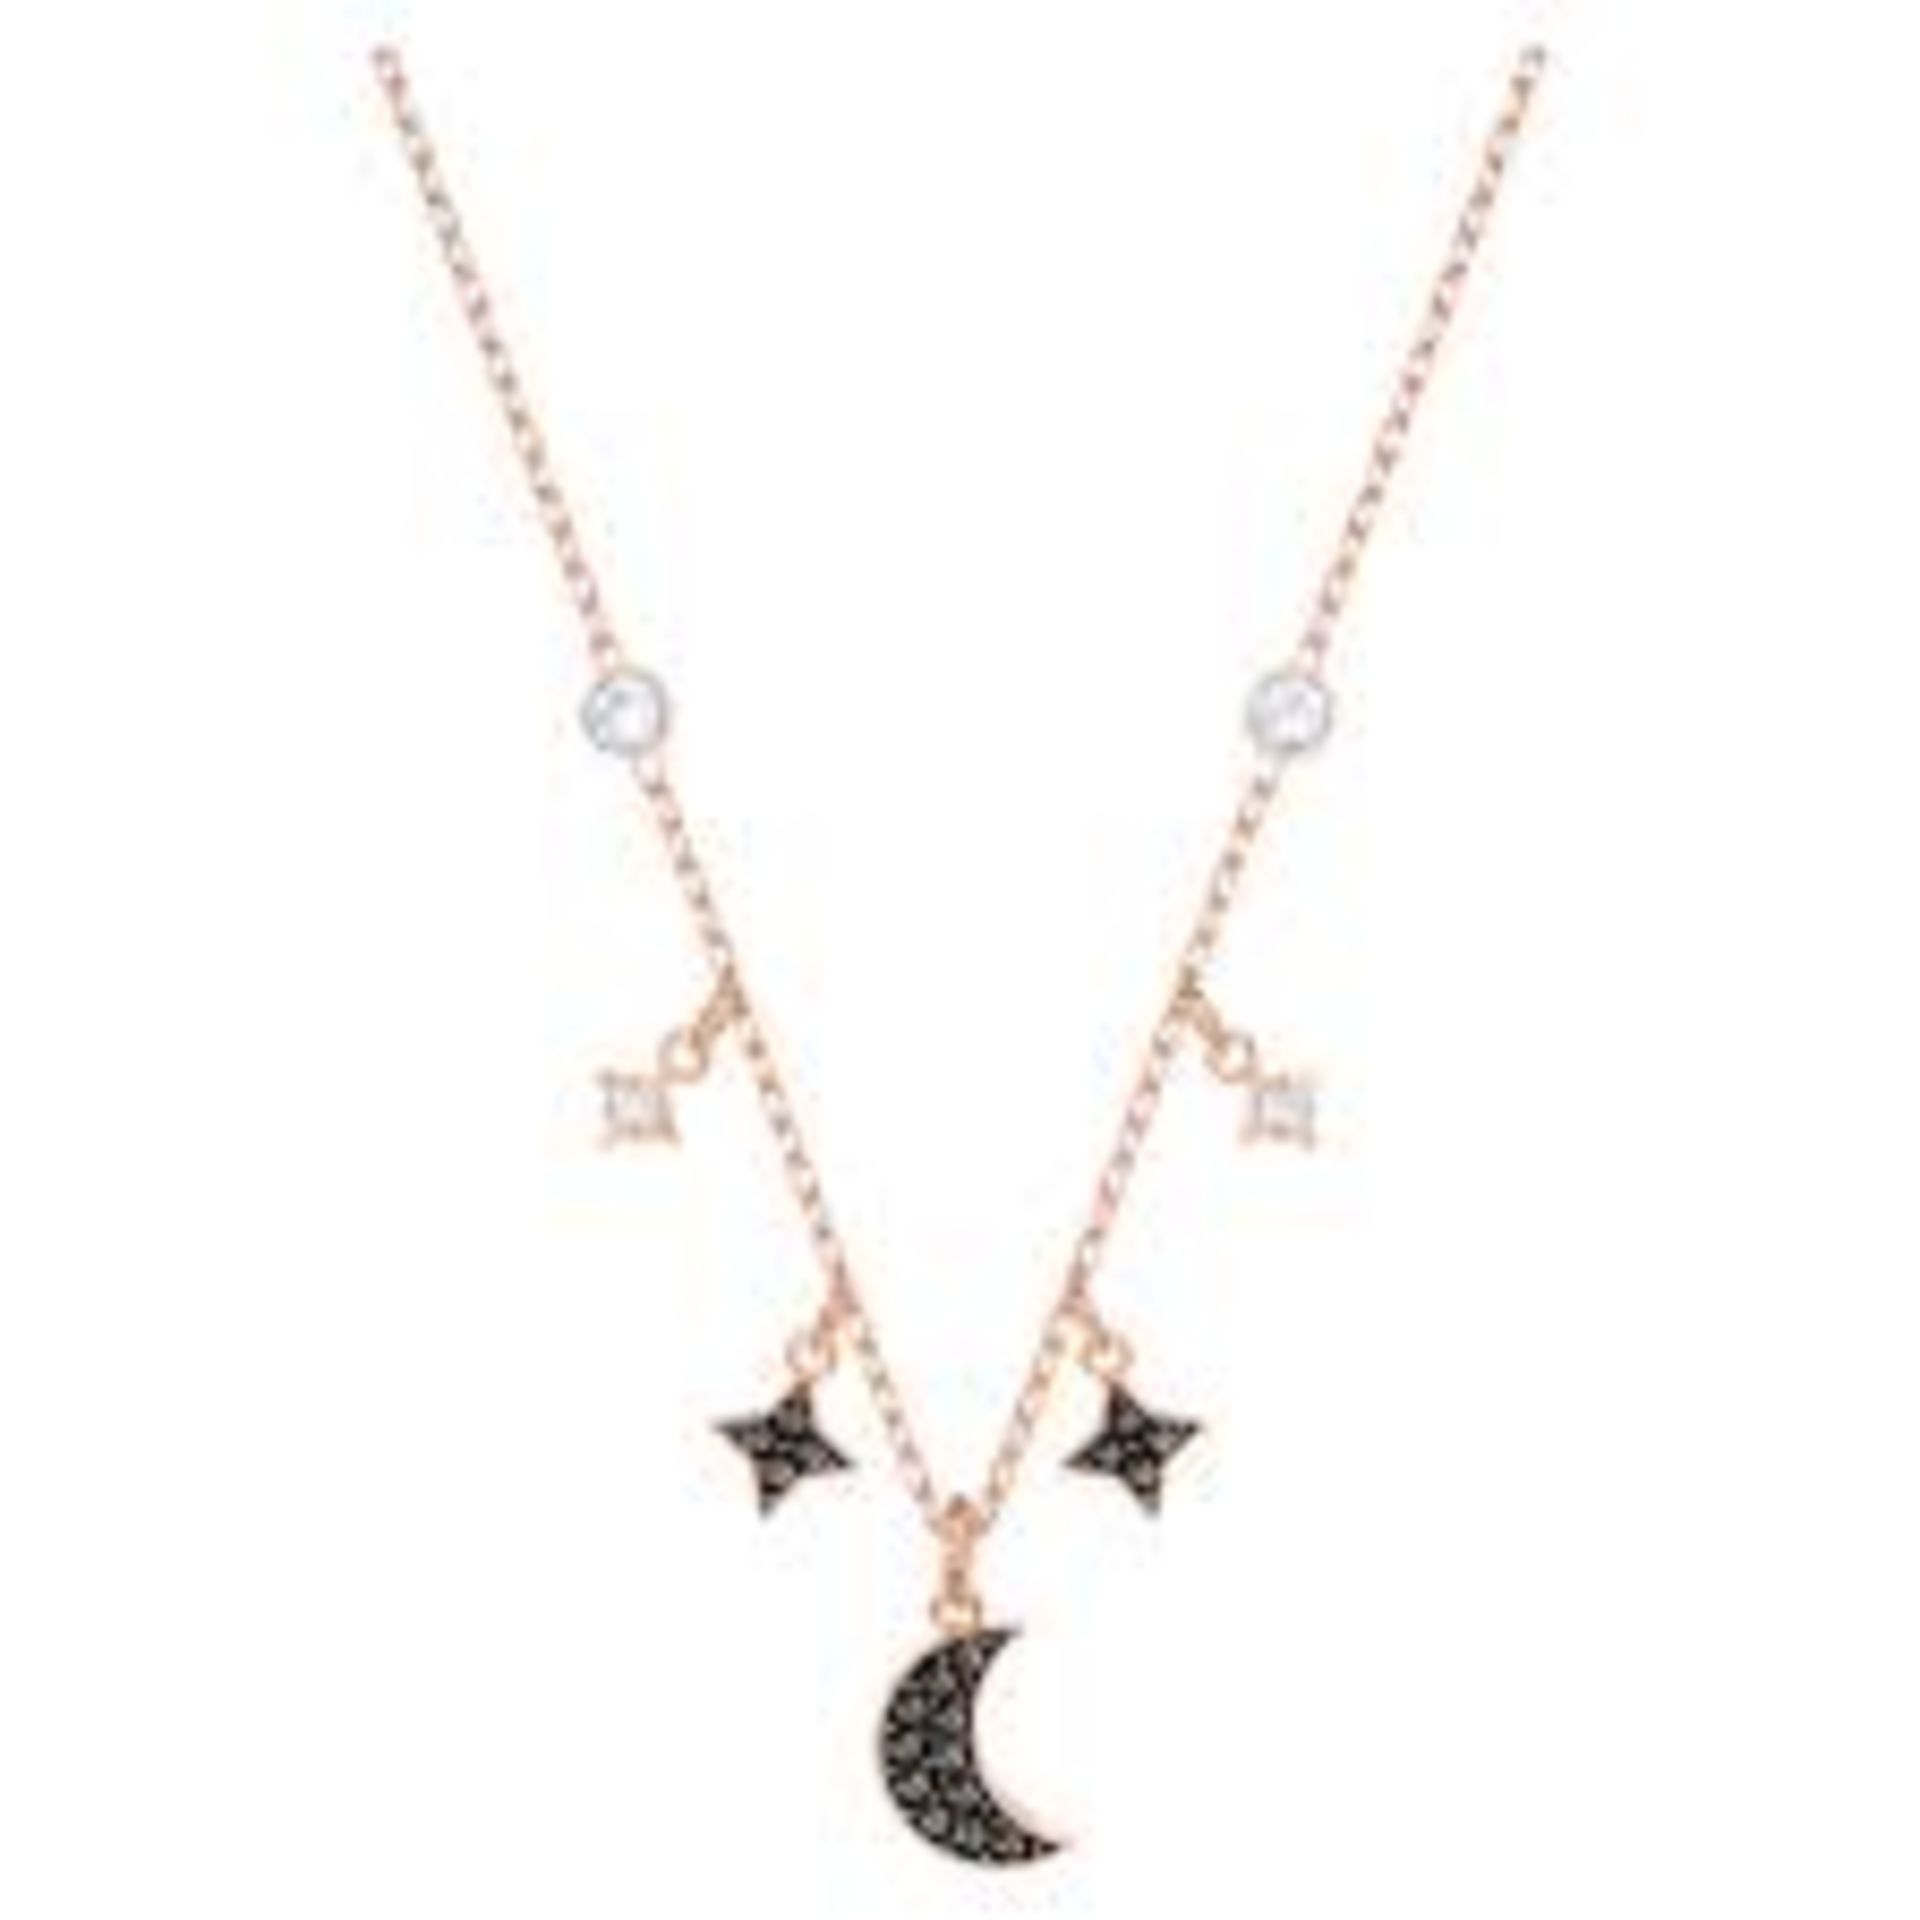 RRP £155 Swarovski Moon & Stars Necklace & Swarovski Black Swan Pendant